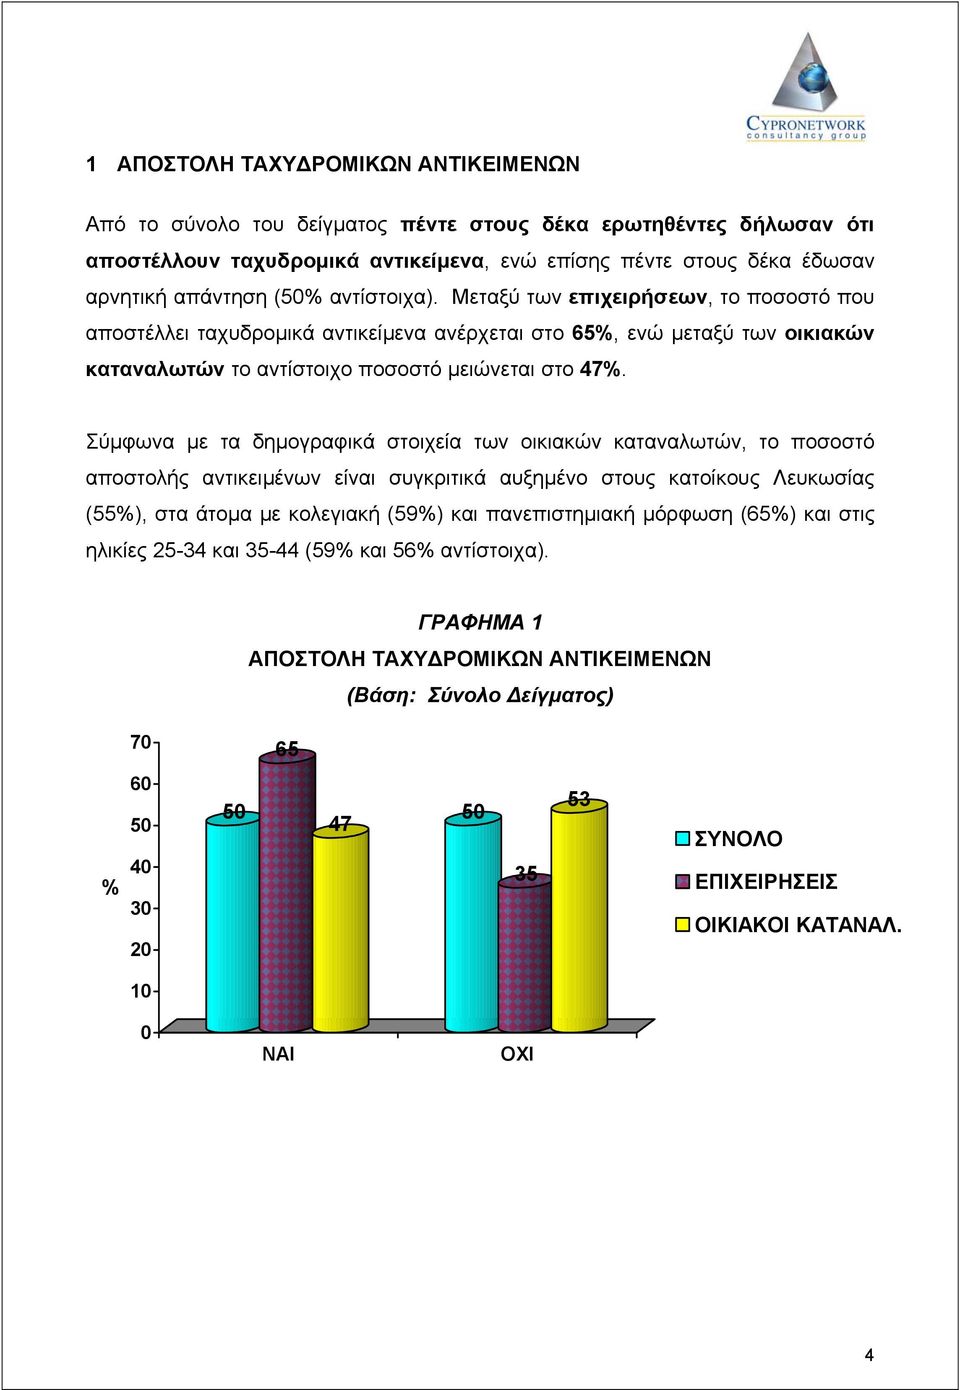 Σύµφωνα µε τα δηµογραφικά στοιχεία των οικιακών καταναλωτών, το ποσοστό αποστολής αντικειµένων είναι συγκριτικά αυξηµένο στους κατοίκους Λευκωσίας (55%), στα άτοµα µε κολεγιακή (59%) και